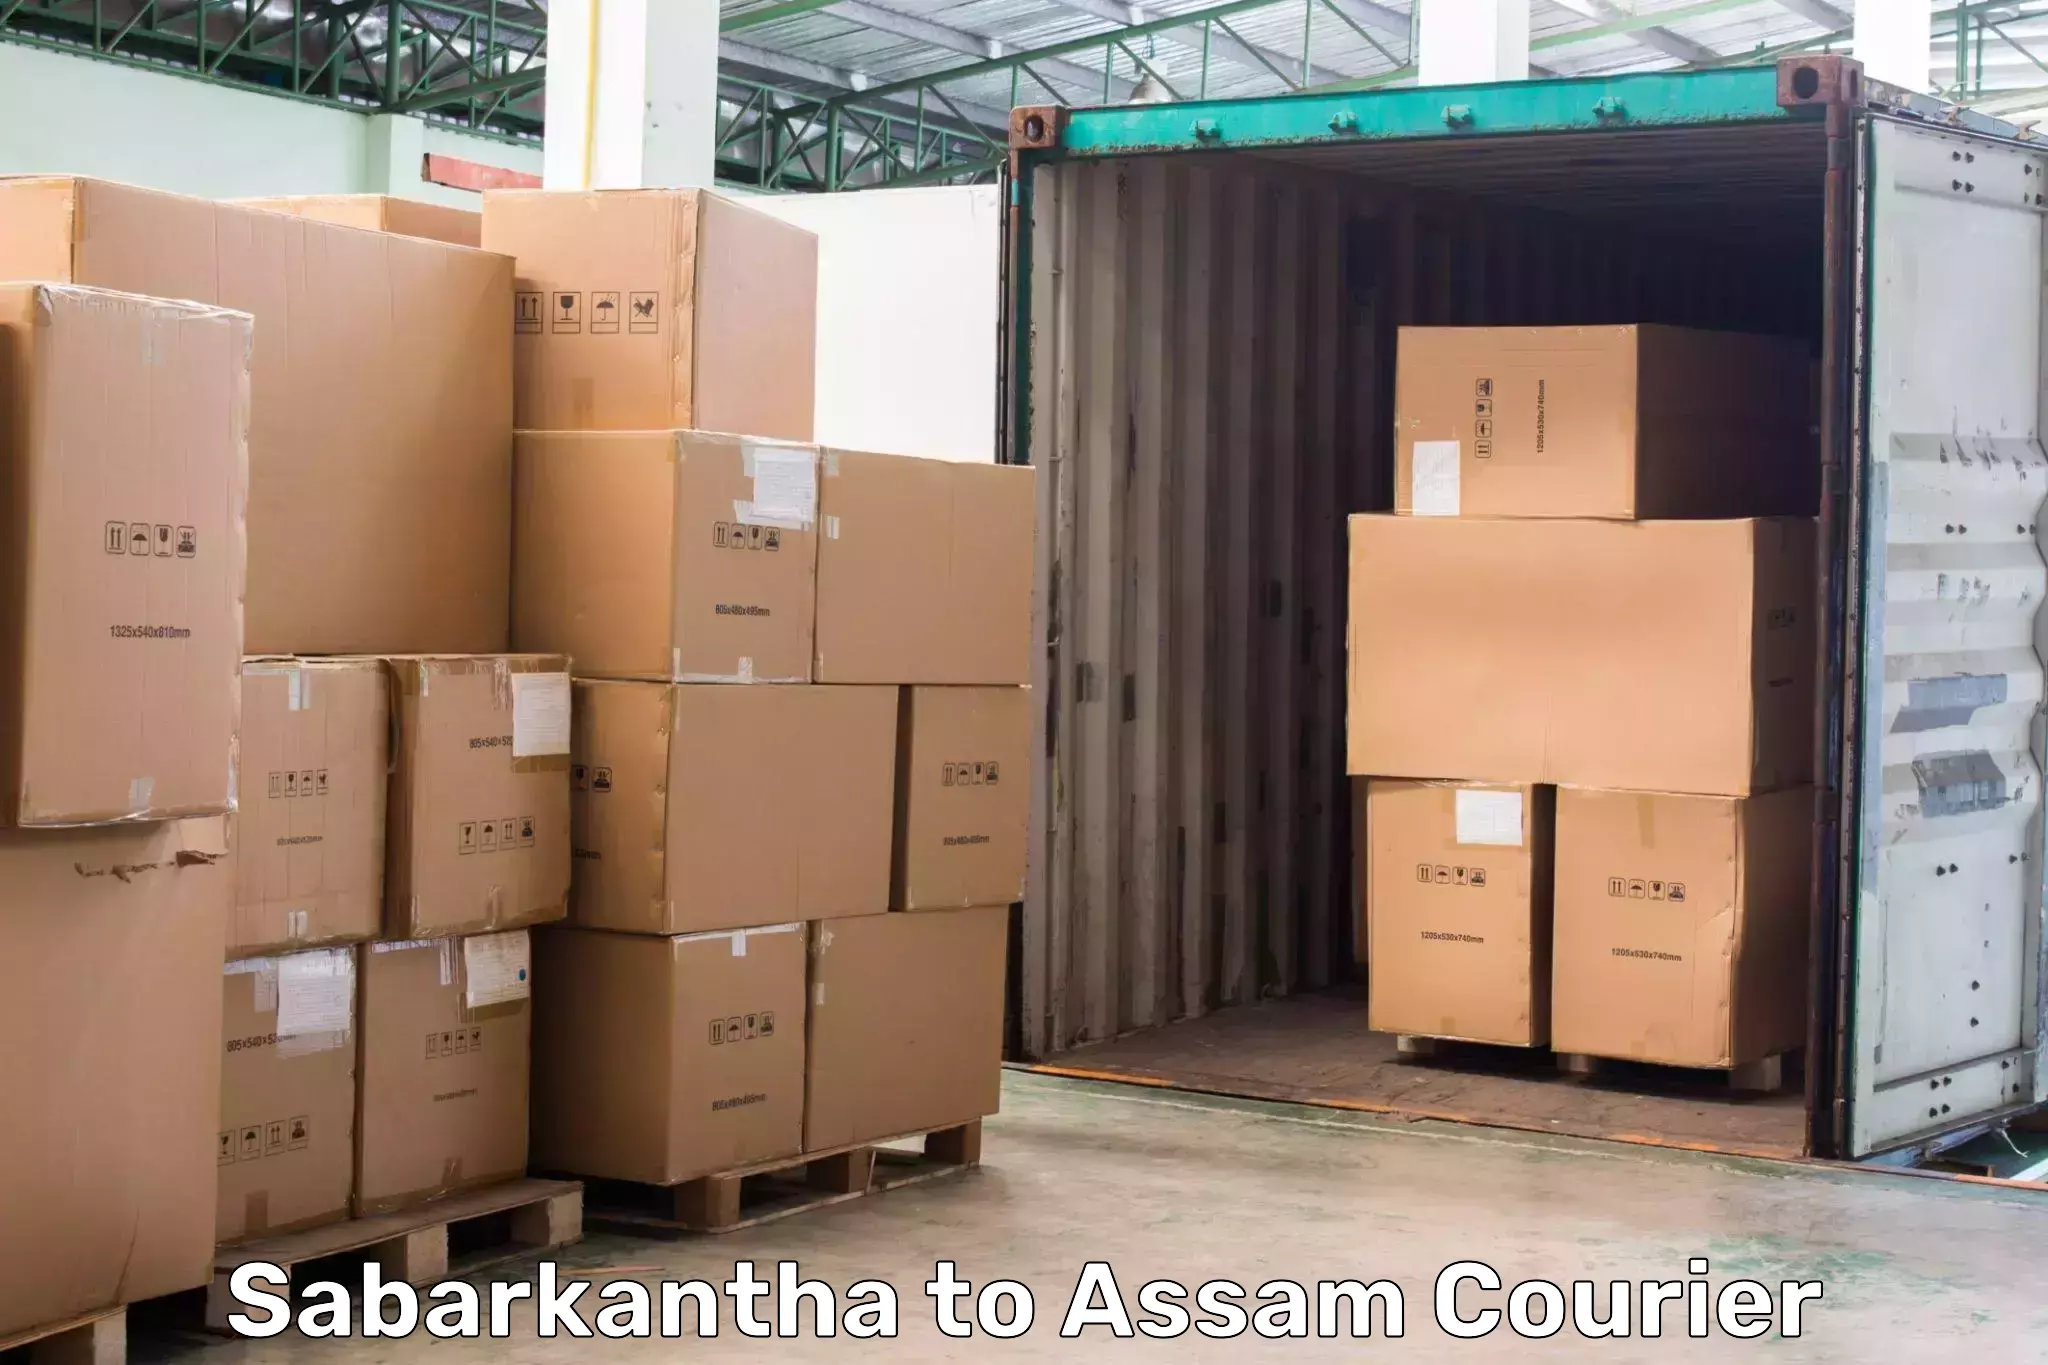 High-capacity shipping options Sabarkantha to Tezpur